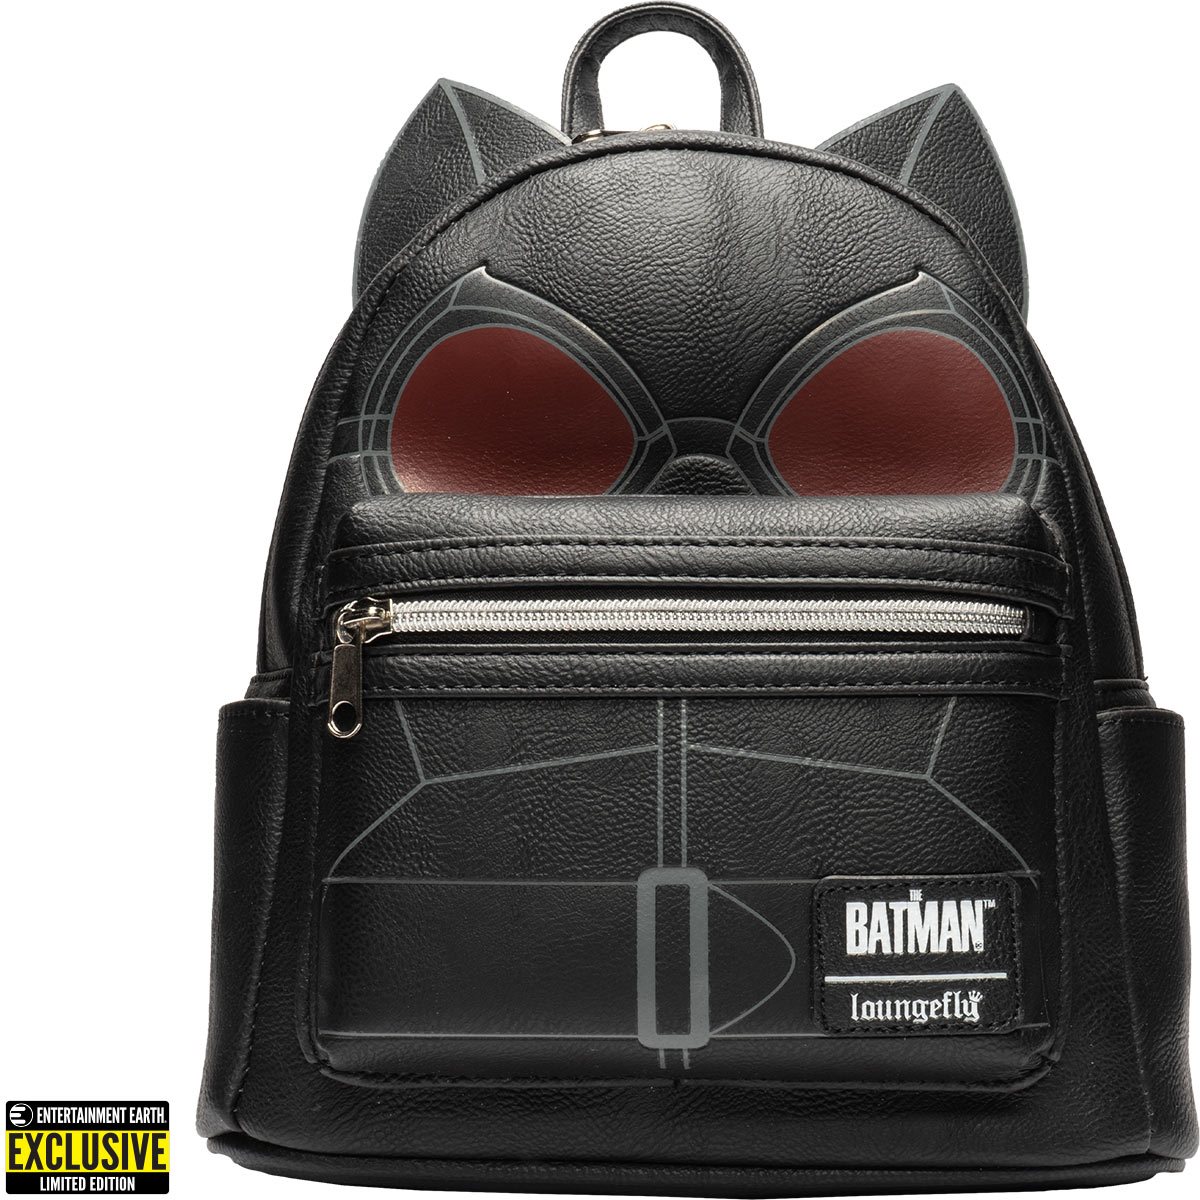 Batman Superhero Backpack 15 inch Backpack